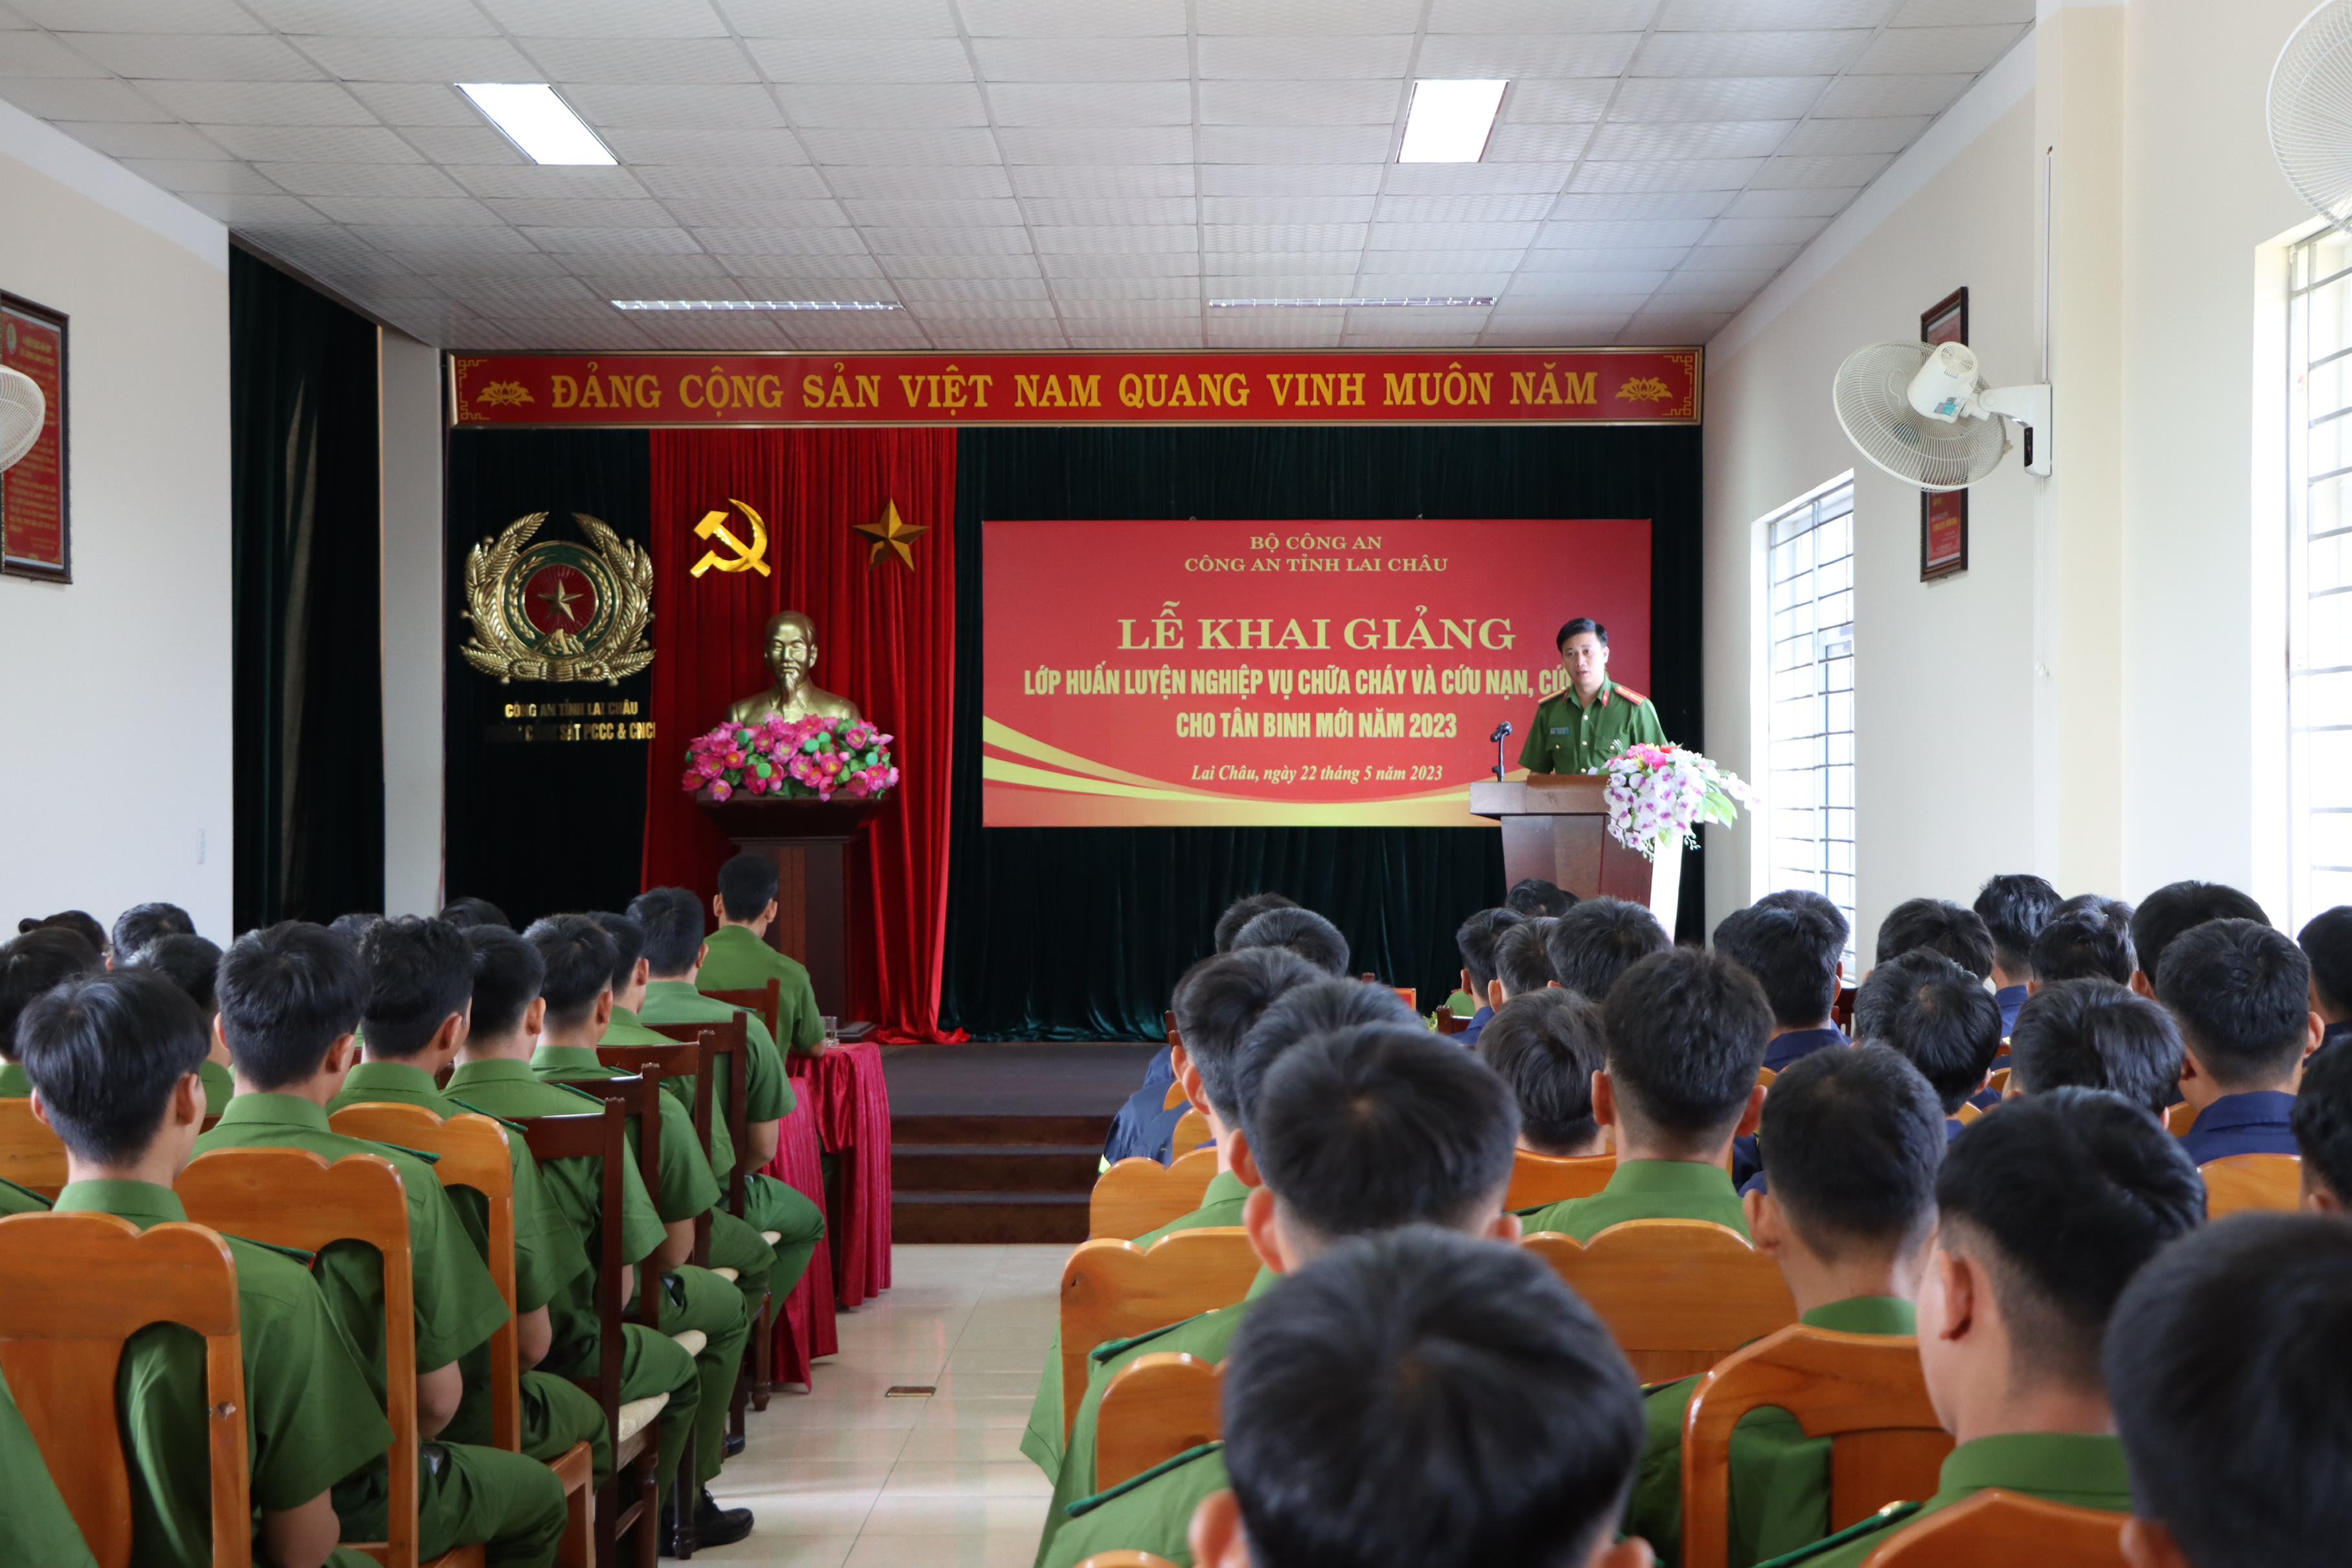 Thiếu tá Vũ Văn Hùng, Trưởng Phòng Cảnh sát PCCC và CNCH phát biểu khai giảng lớp học